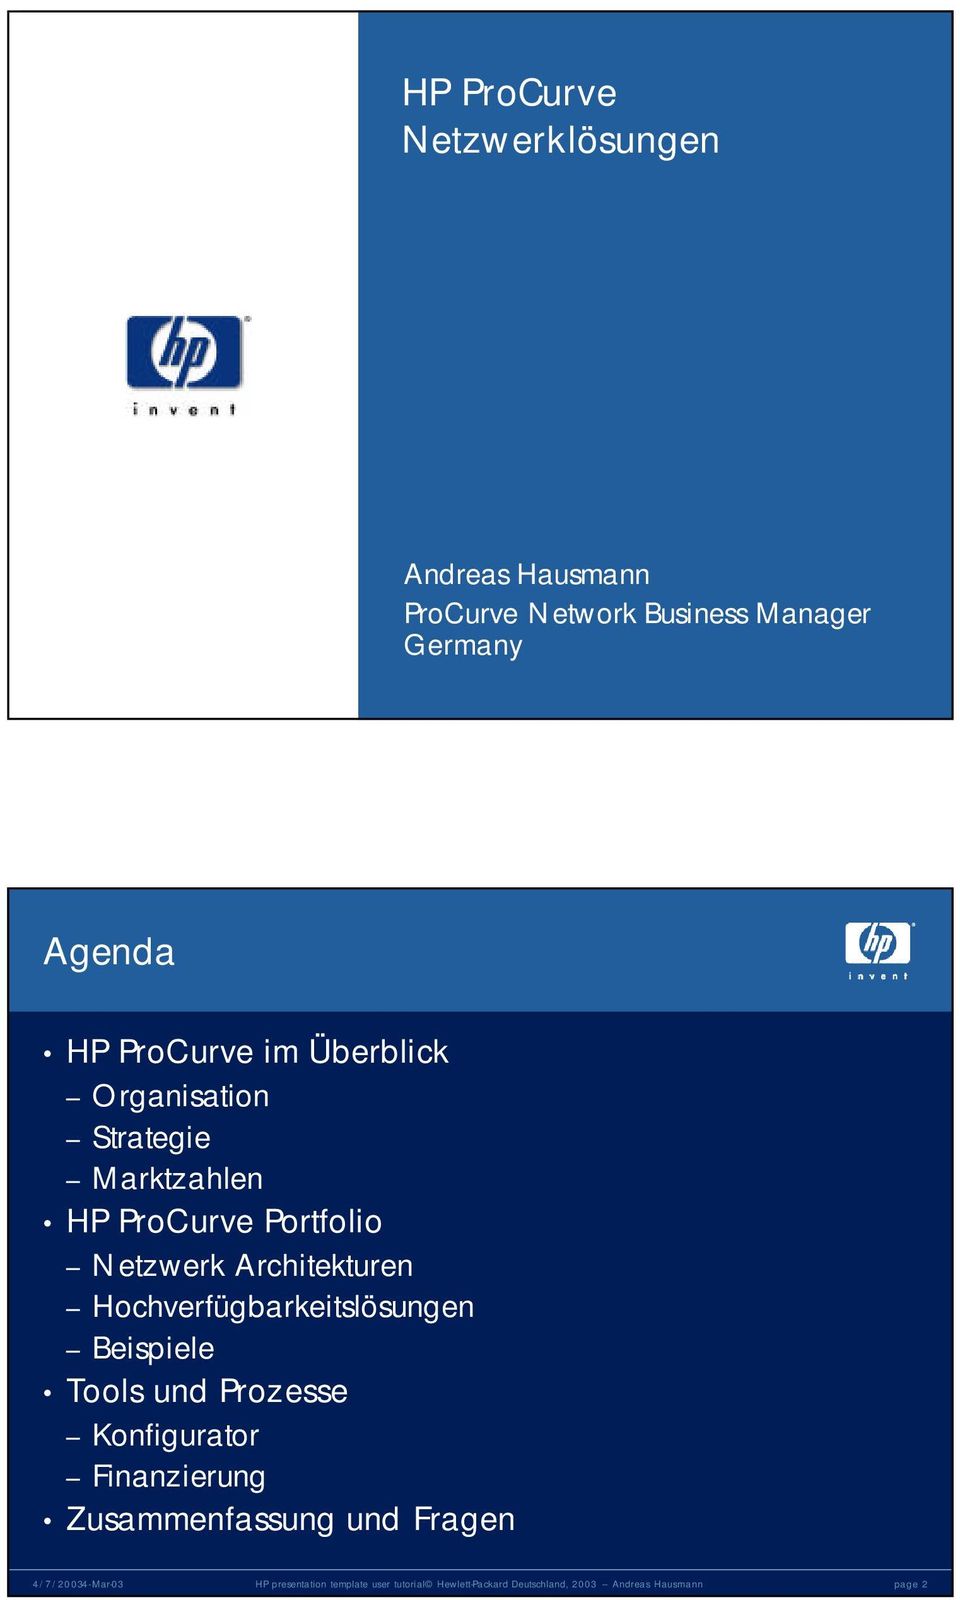 Marktzahlen HP ProCurve Portfolio Netzwerk Architekturen